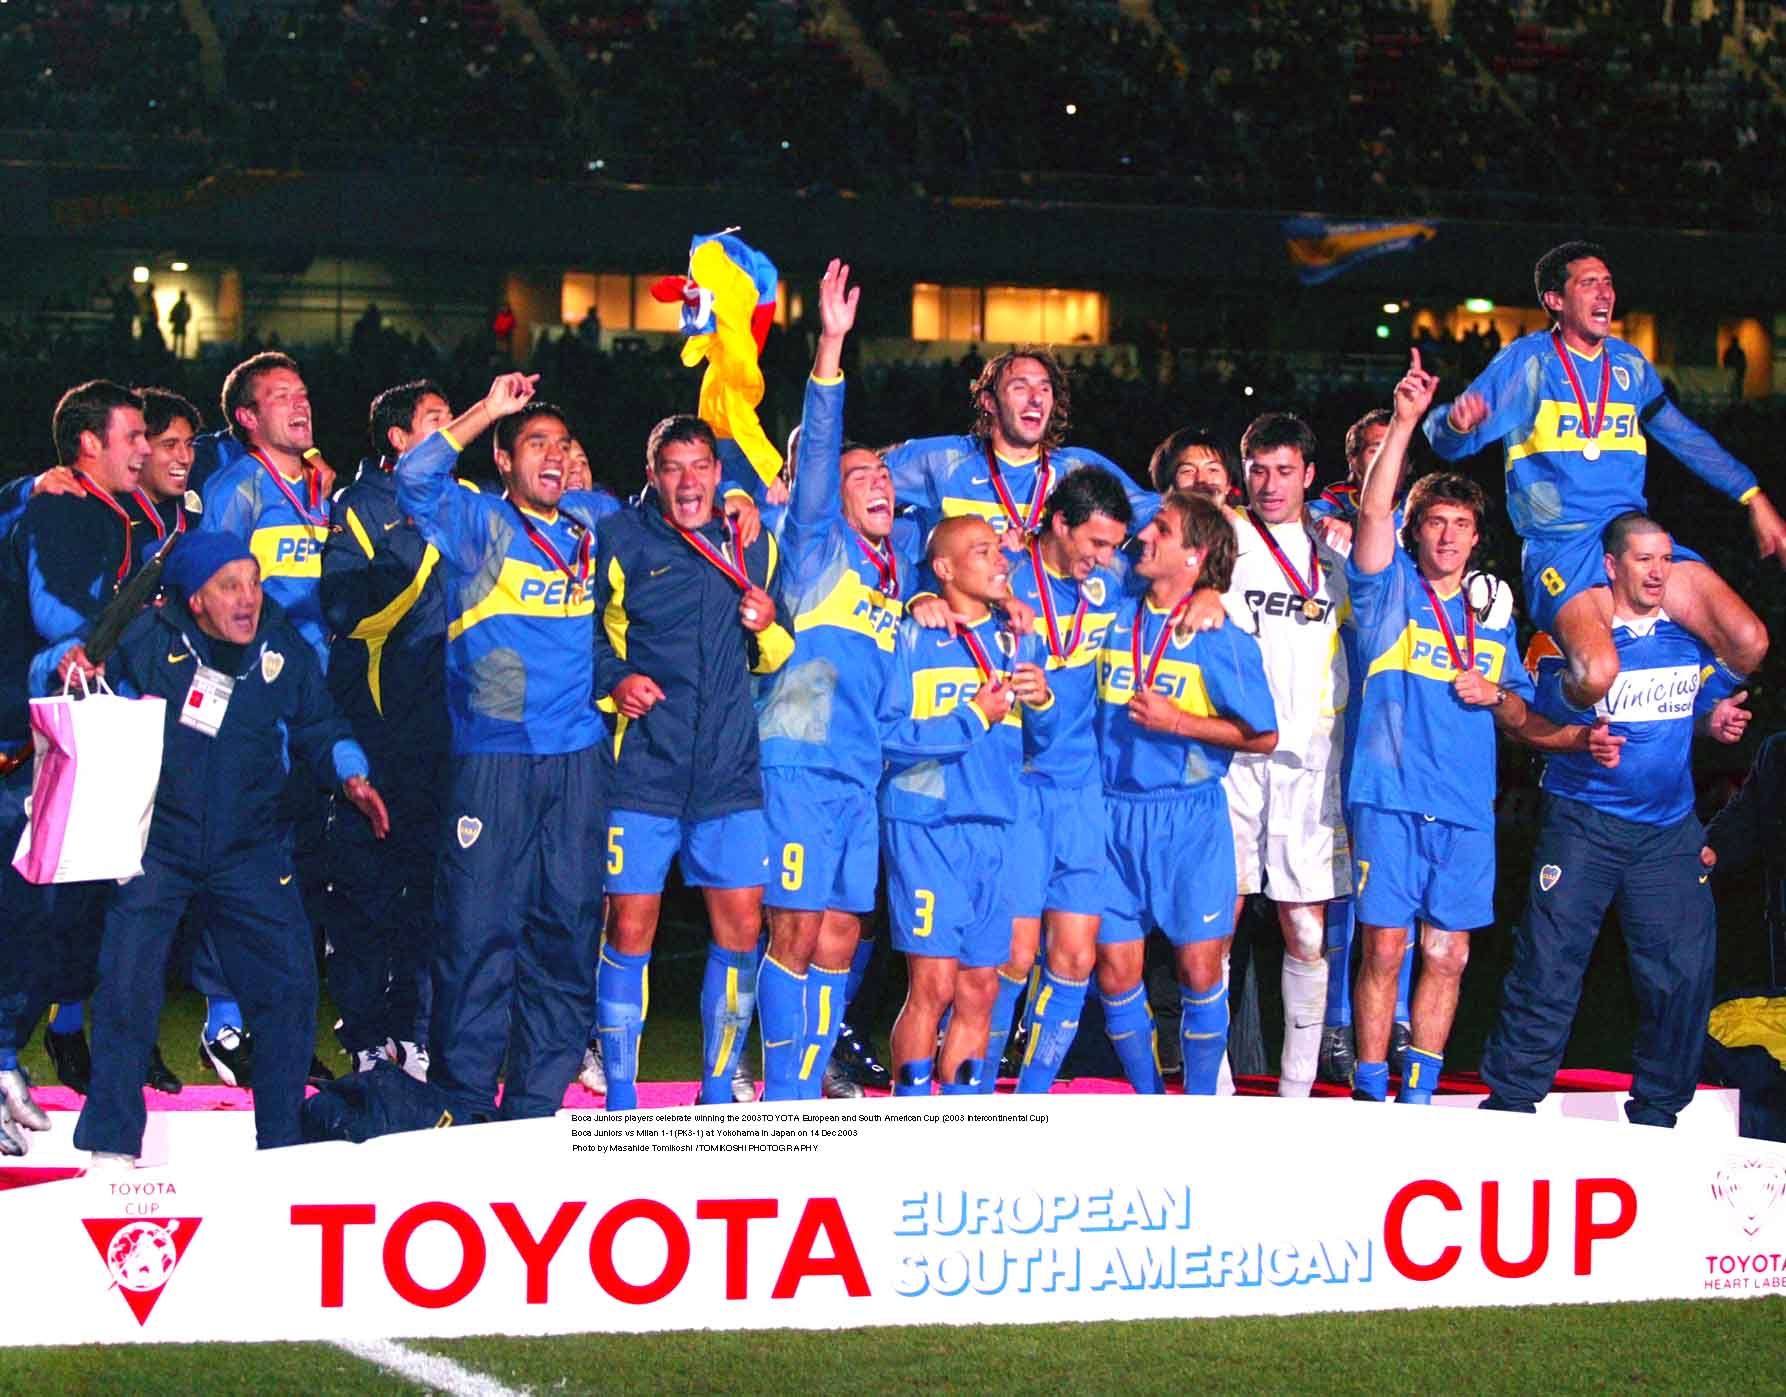 tphoto on X: "Các cầu thủ Boca Juniors ăn mừng chức vô địch TOYOTA châu Âu và Nam Mỹ 2003 (Cúp liên lục địa 2003) Boca Juniors vs Milan 1-1(PK3-1) tại Yokohama, Nhật Bản vào ngày 14 tháng 12 năm 2003 Ảnh